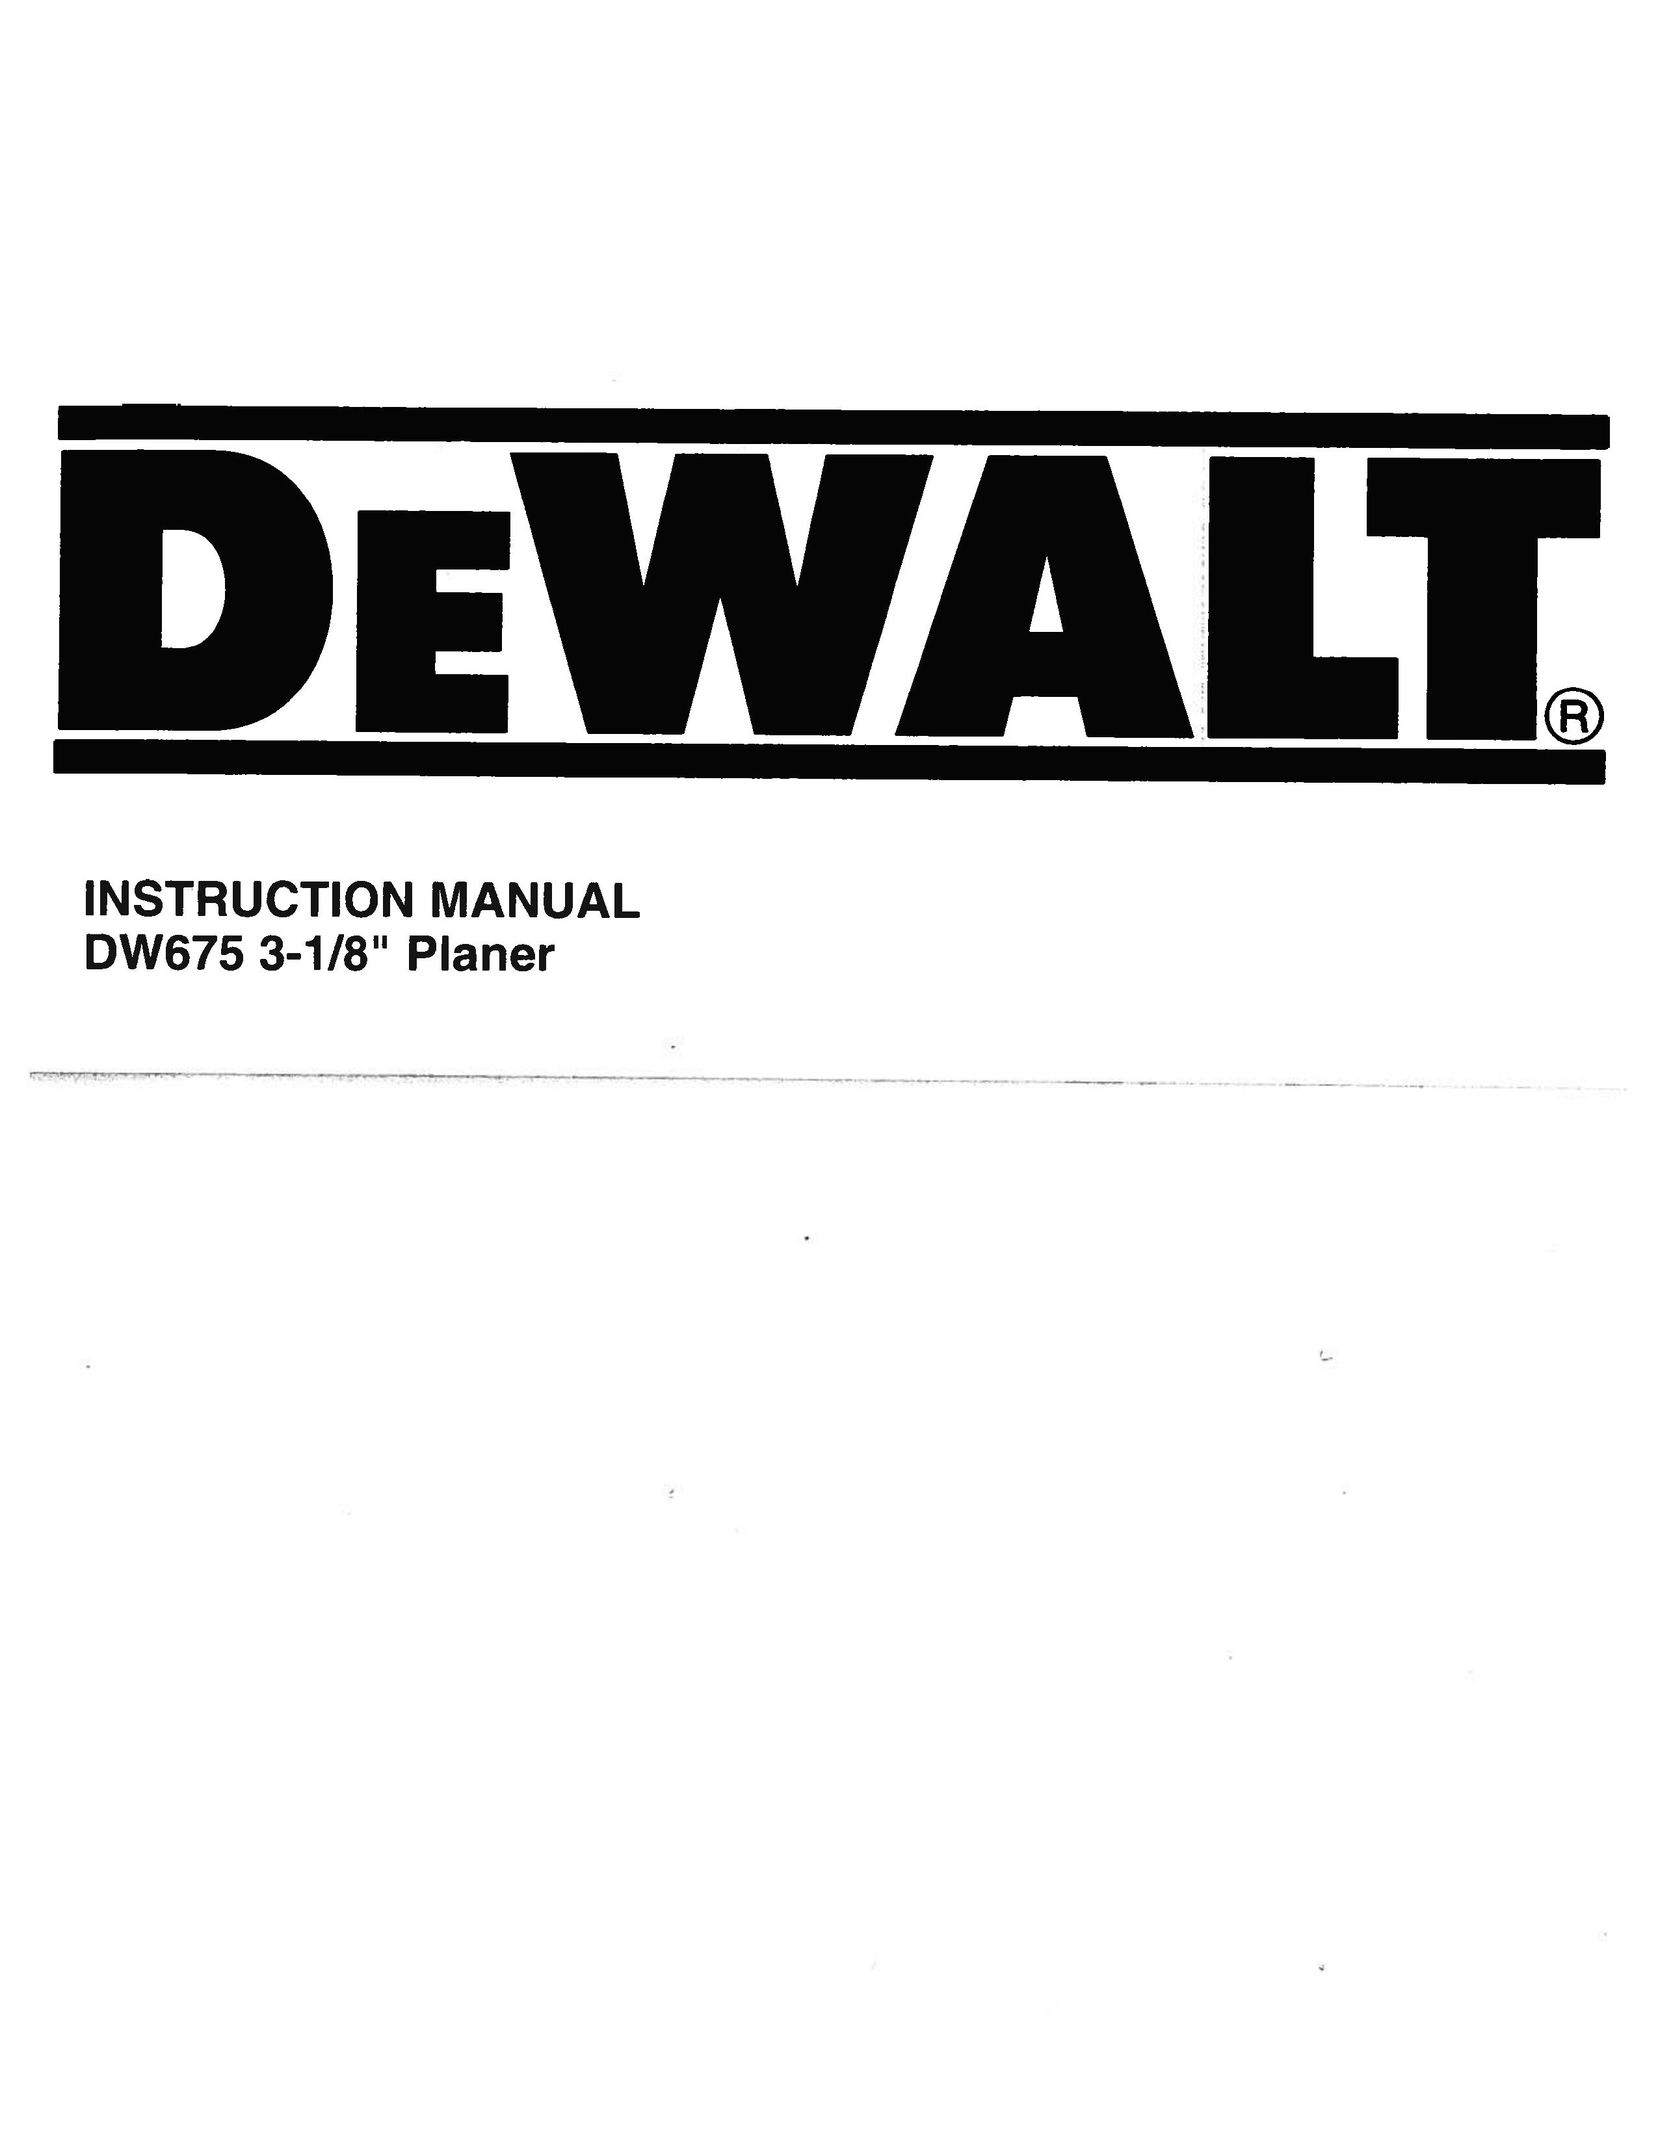 DeWalt DW675 Planer User Manual